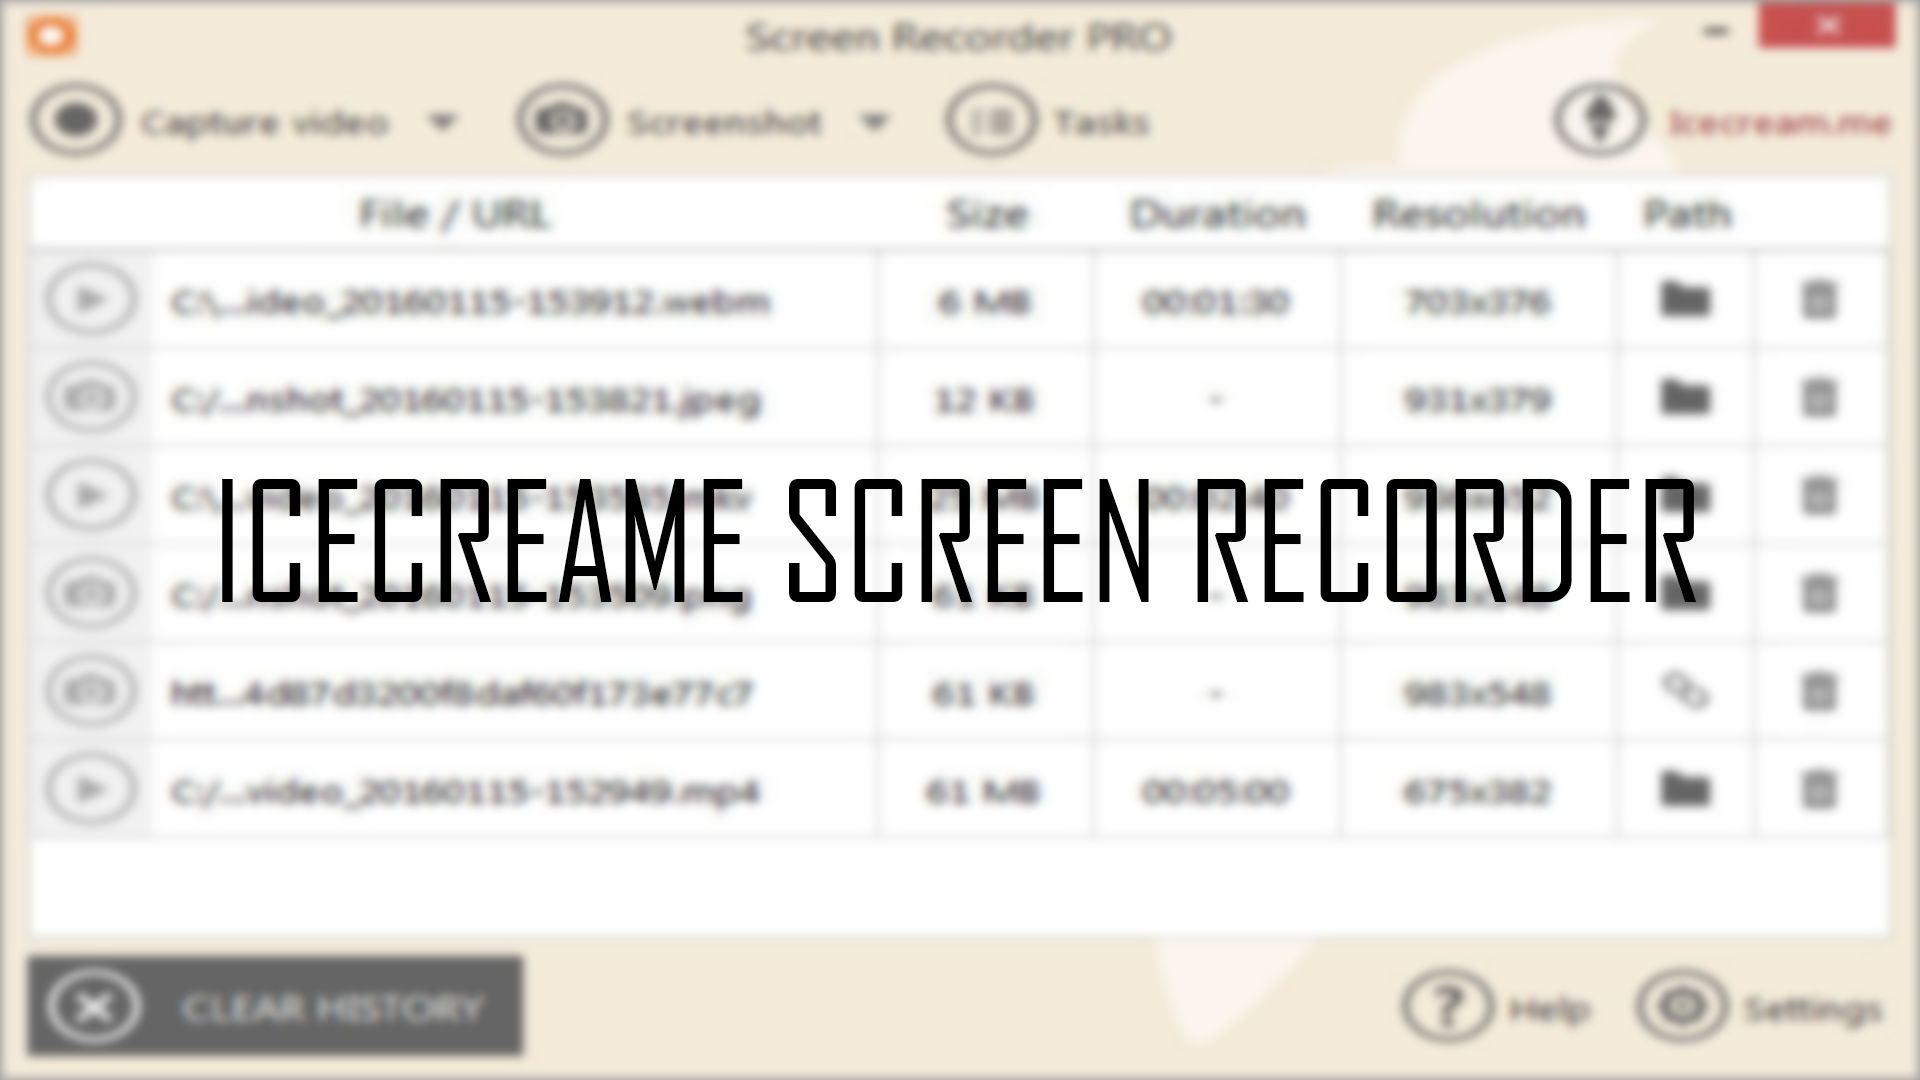 online screen recorder download